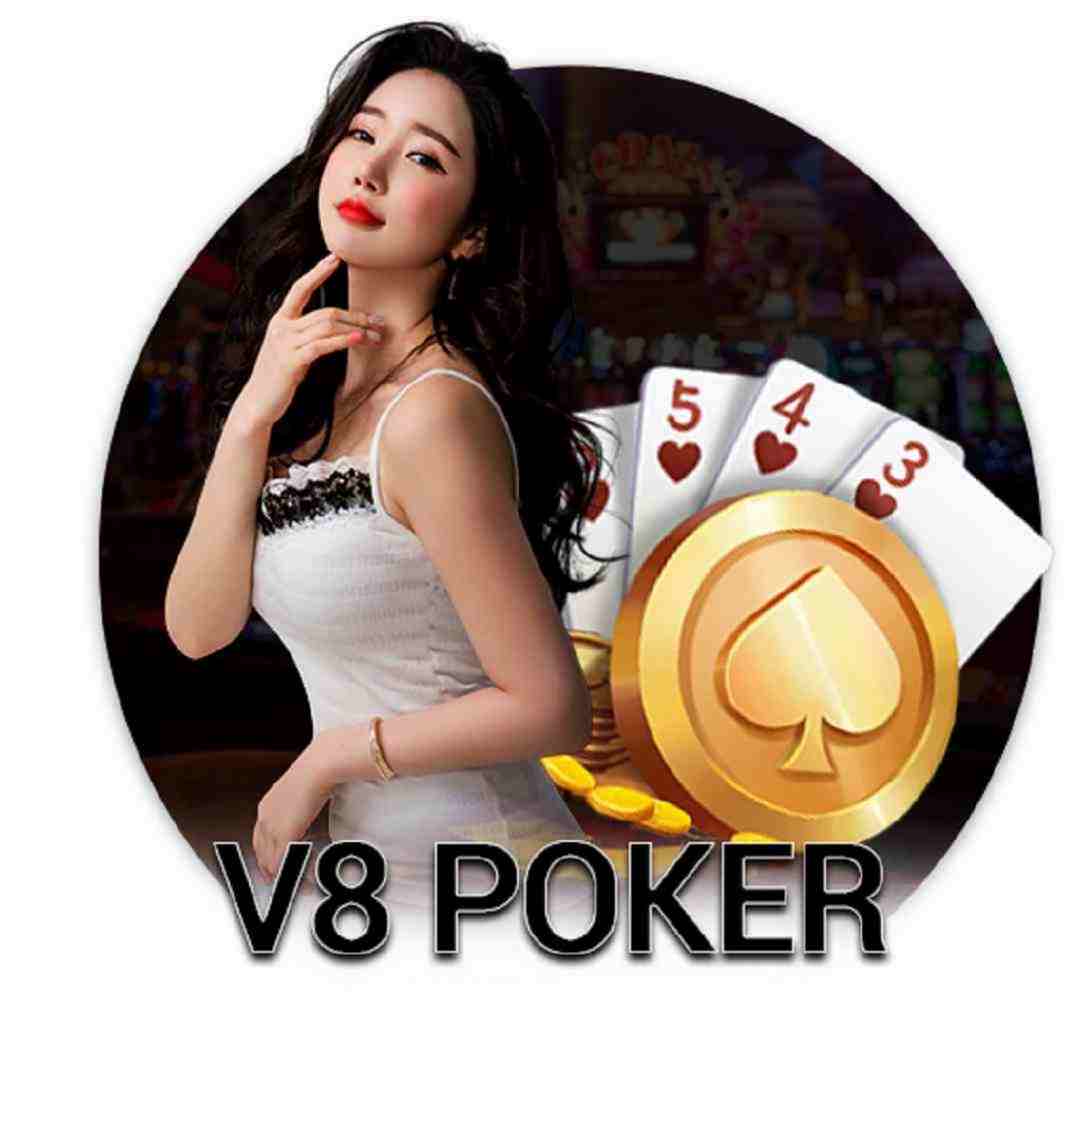 V8 poker và hàng loạt thông tin cụ thể